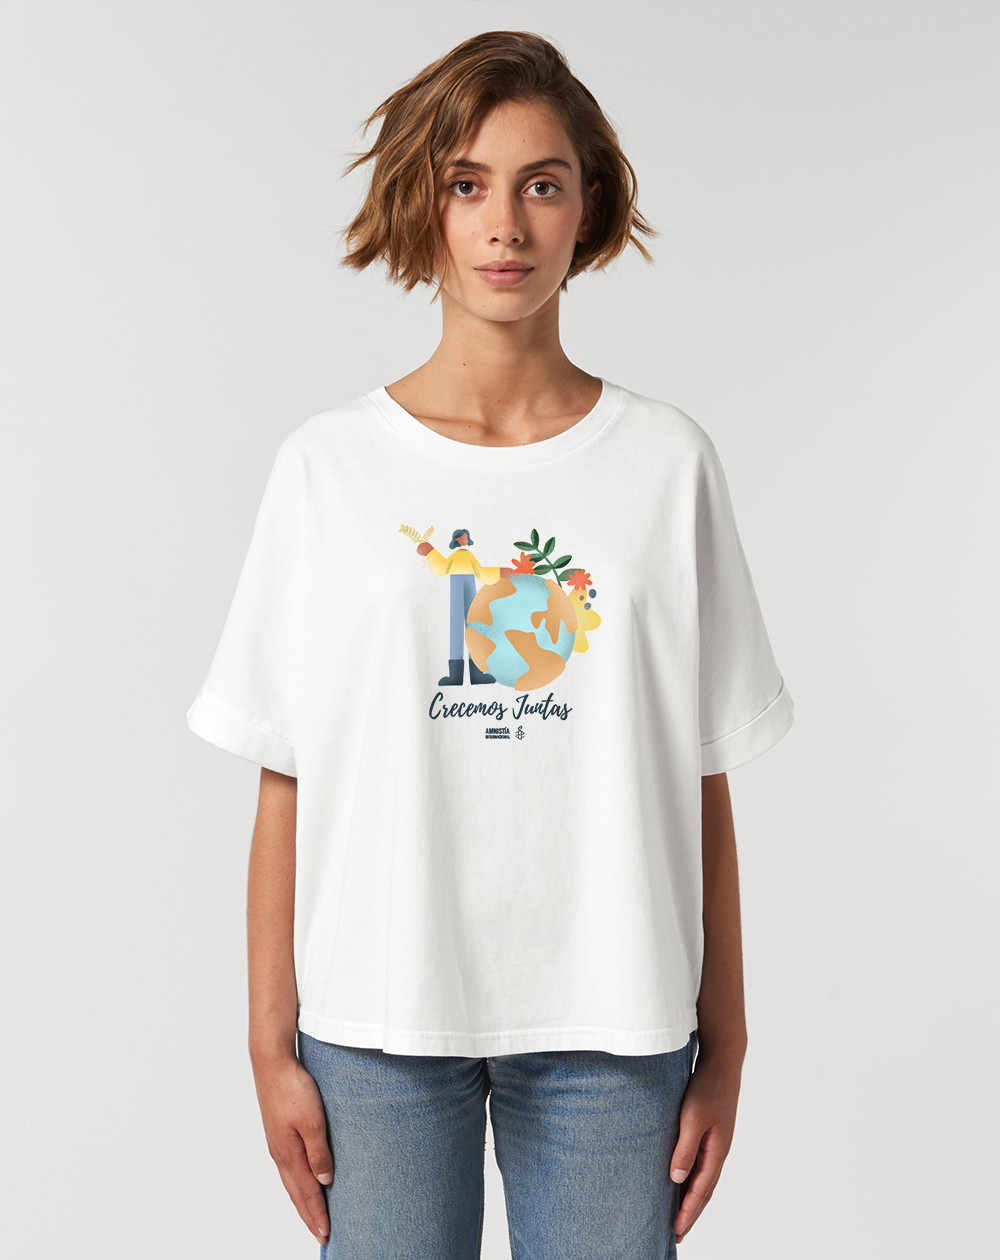 Camiseta especial ecofeminista